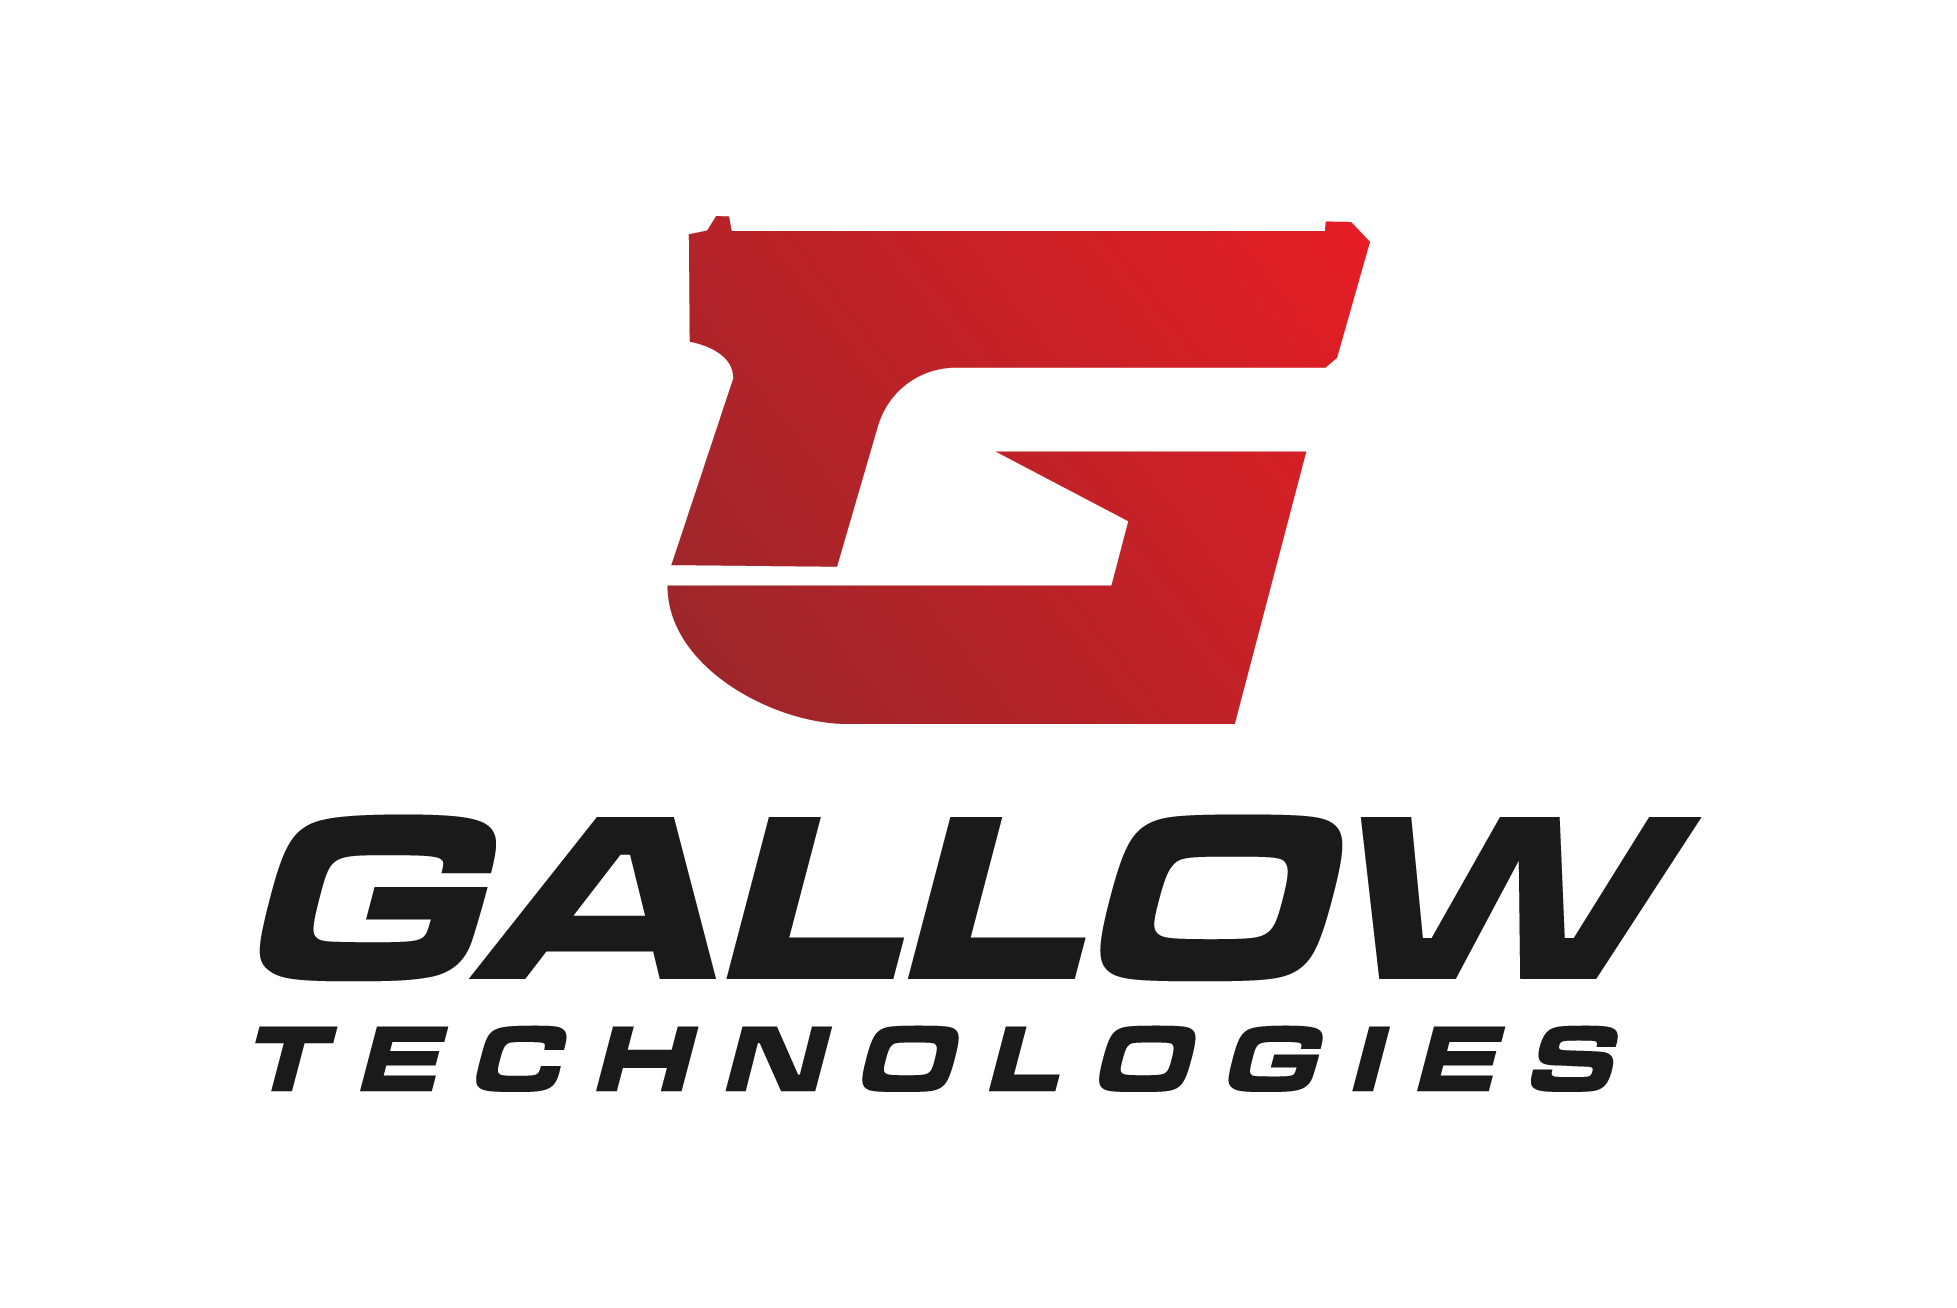 Gallow tech